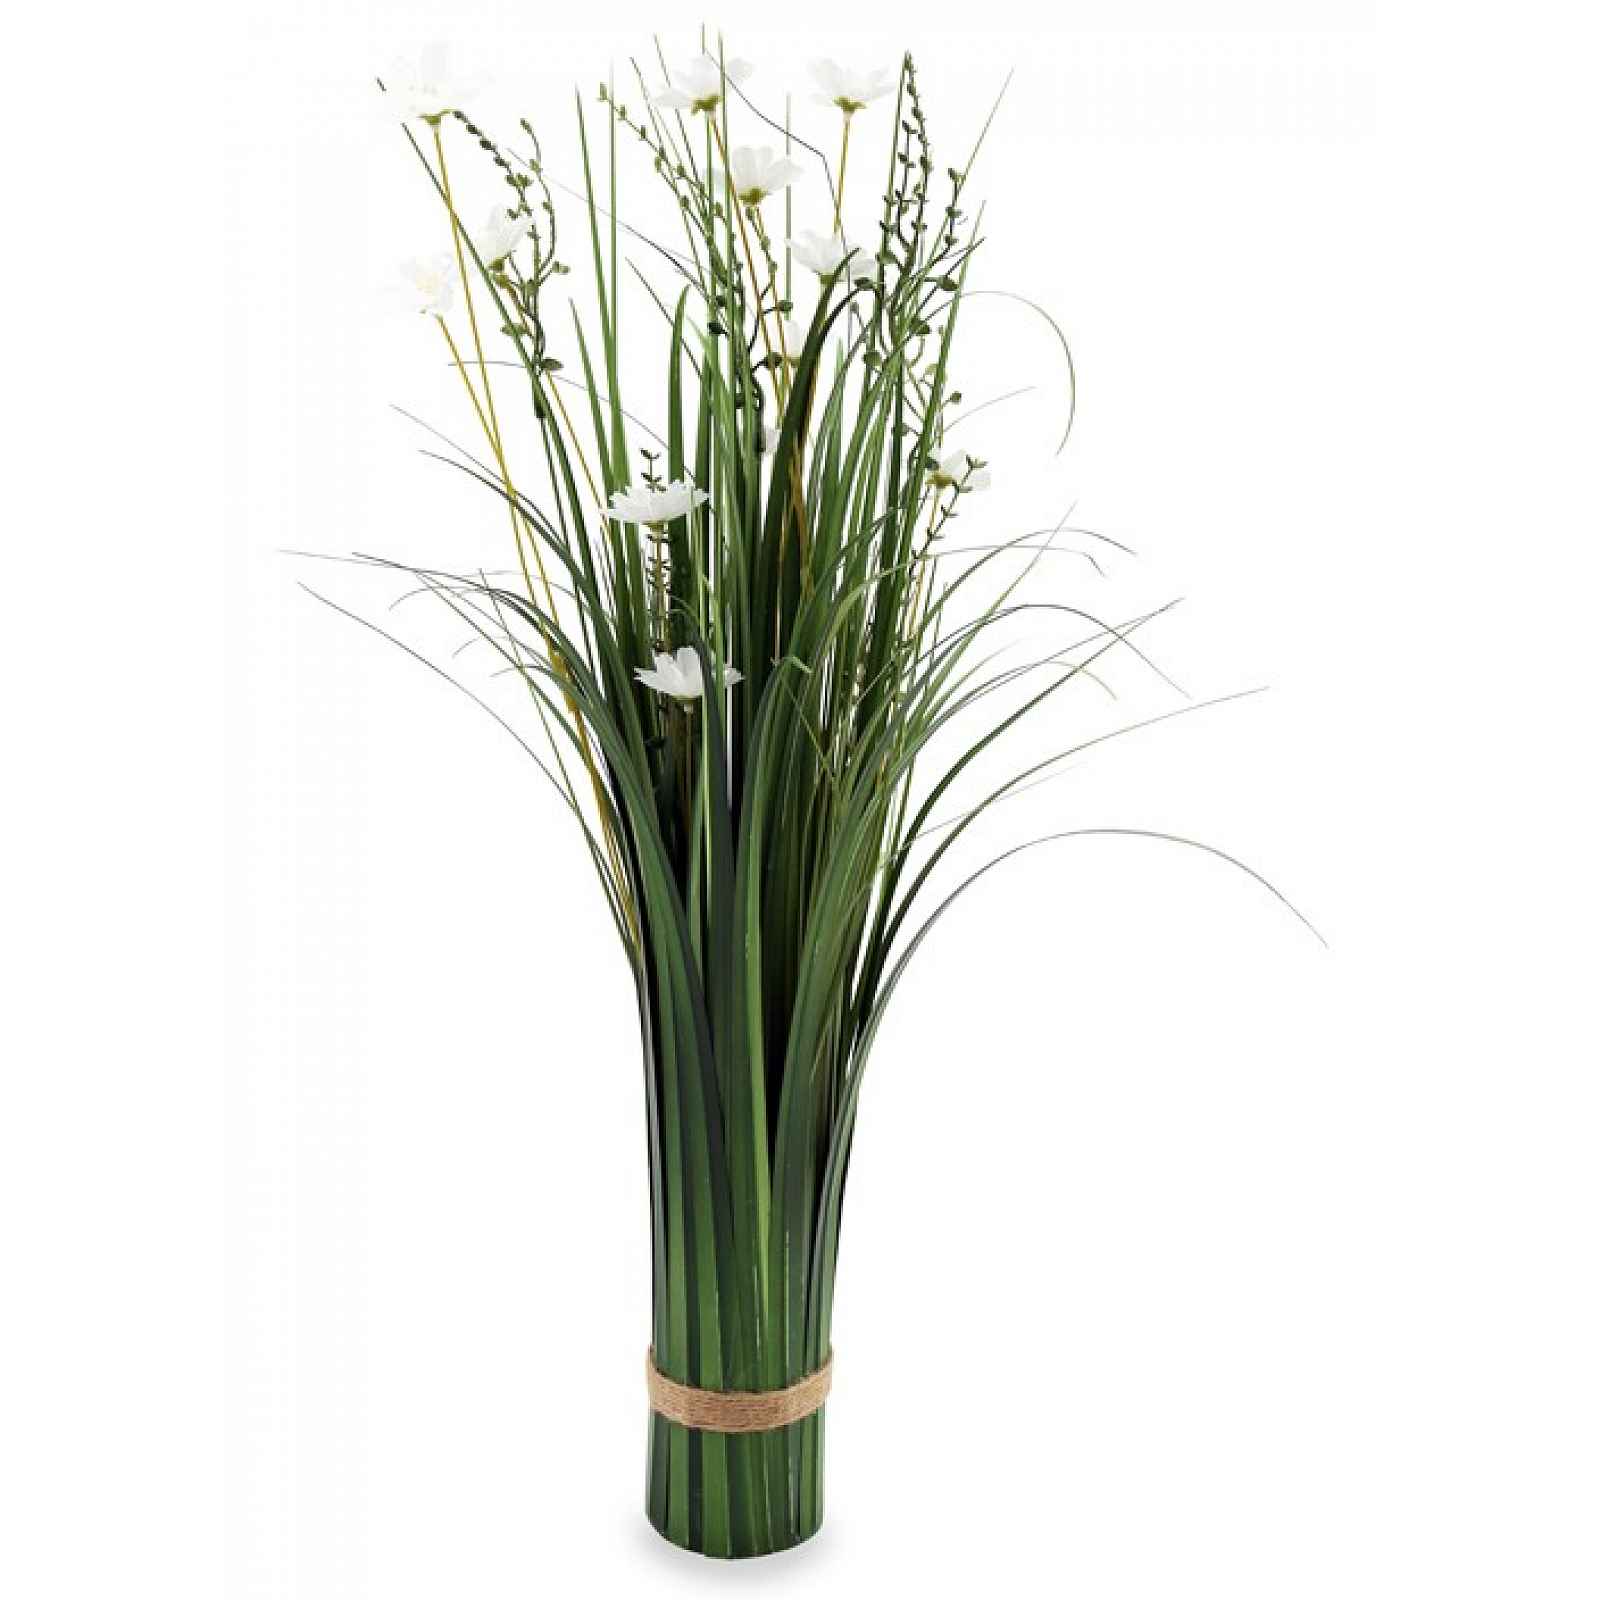 Umělá květina Svazek kvetoucí trávy, 66 cm